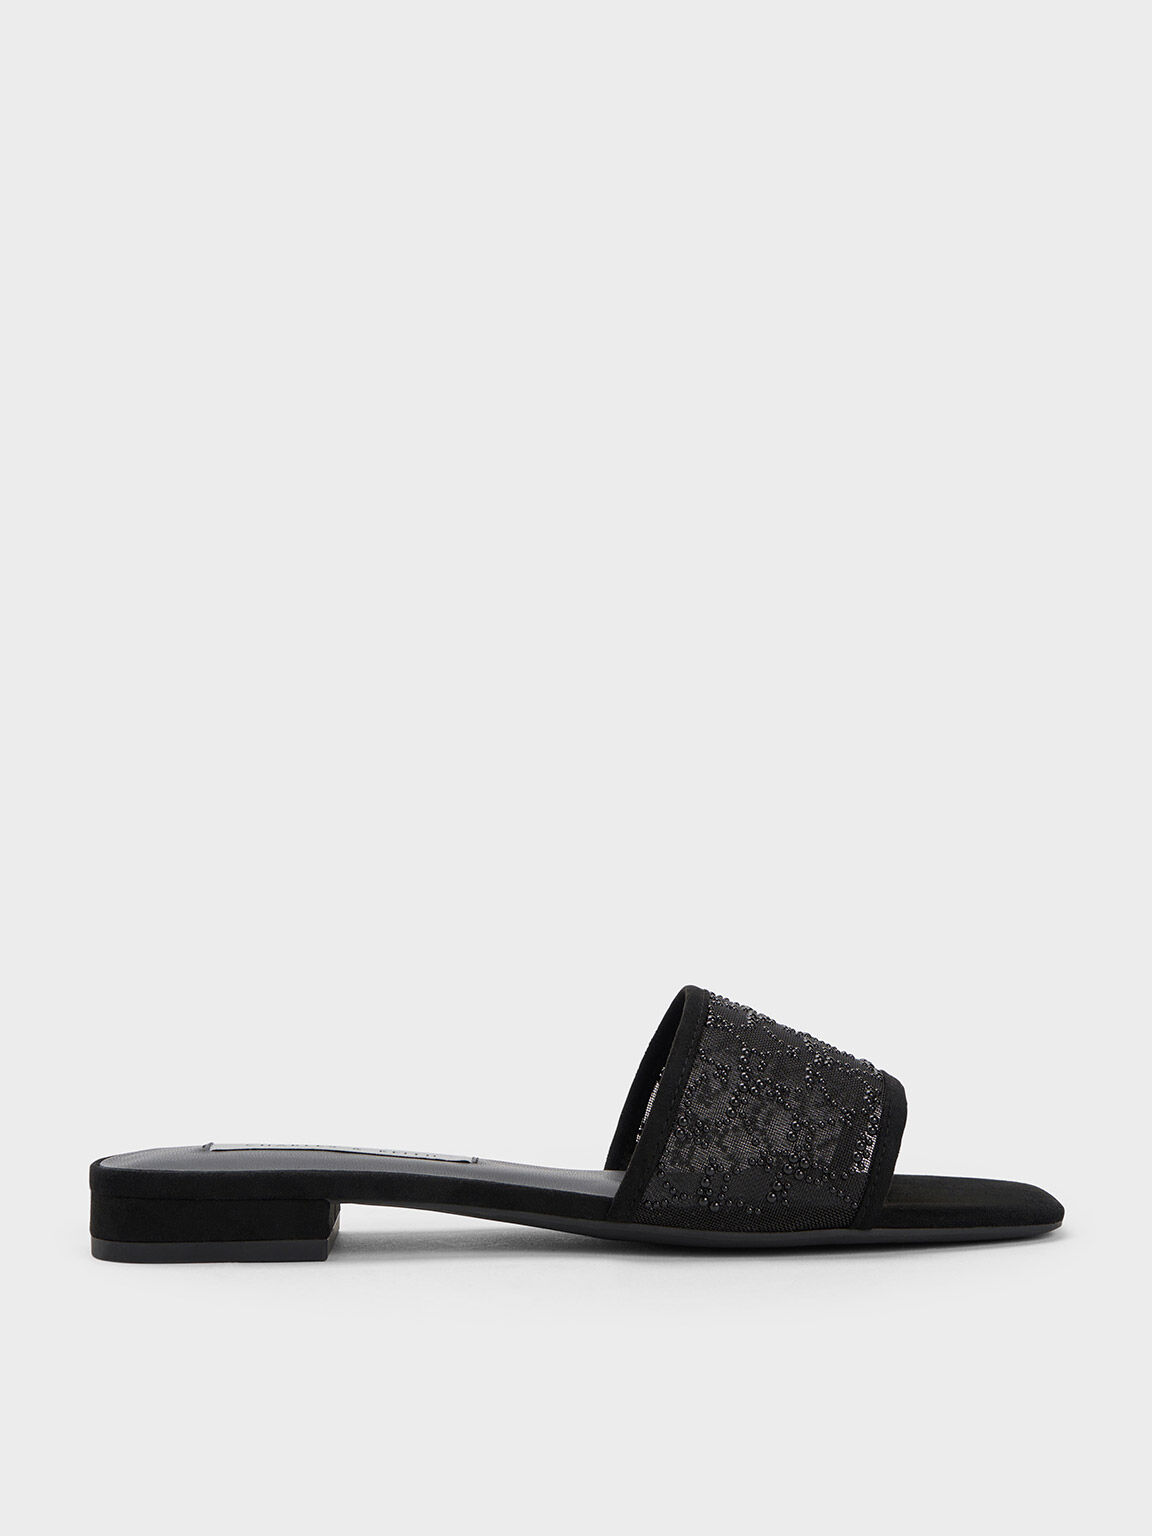 Bead-Embellished Mesh Flat Sandals, Black, hi-res